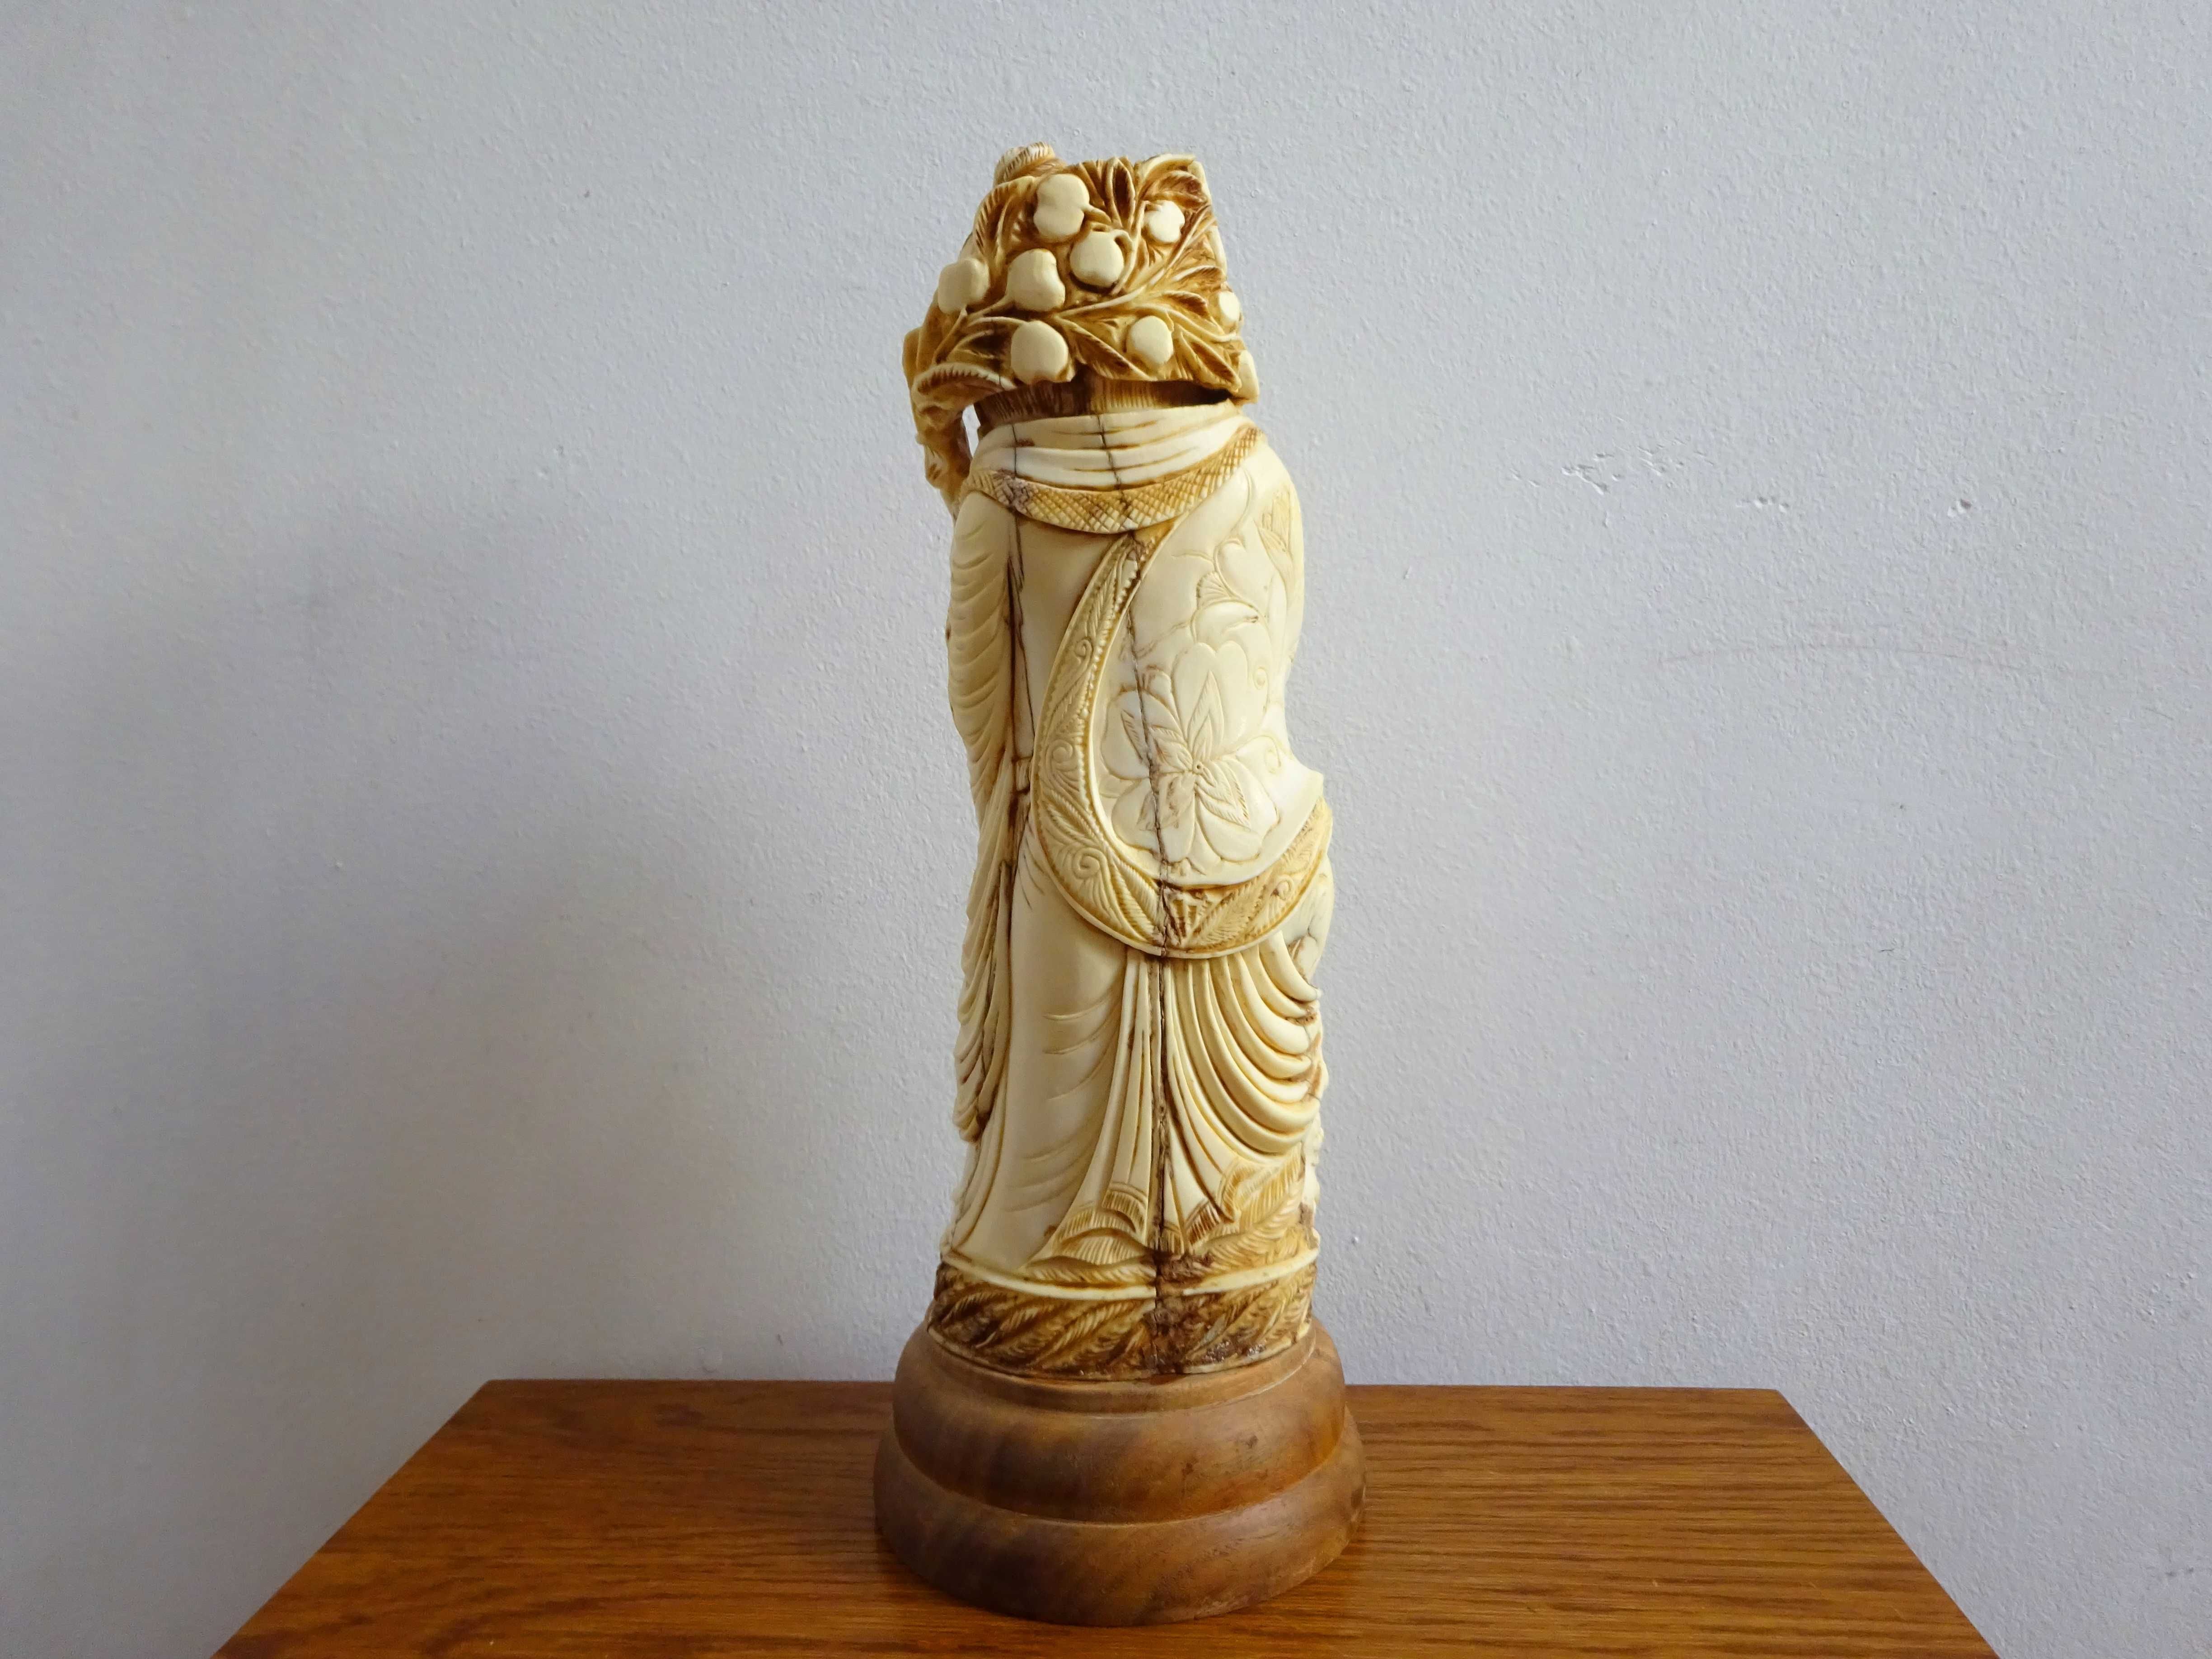 Statueta asiatica sculptata manual - Sculptura Veche si Rara